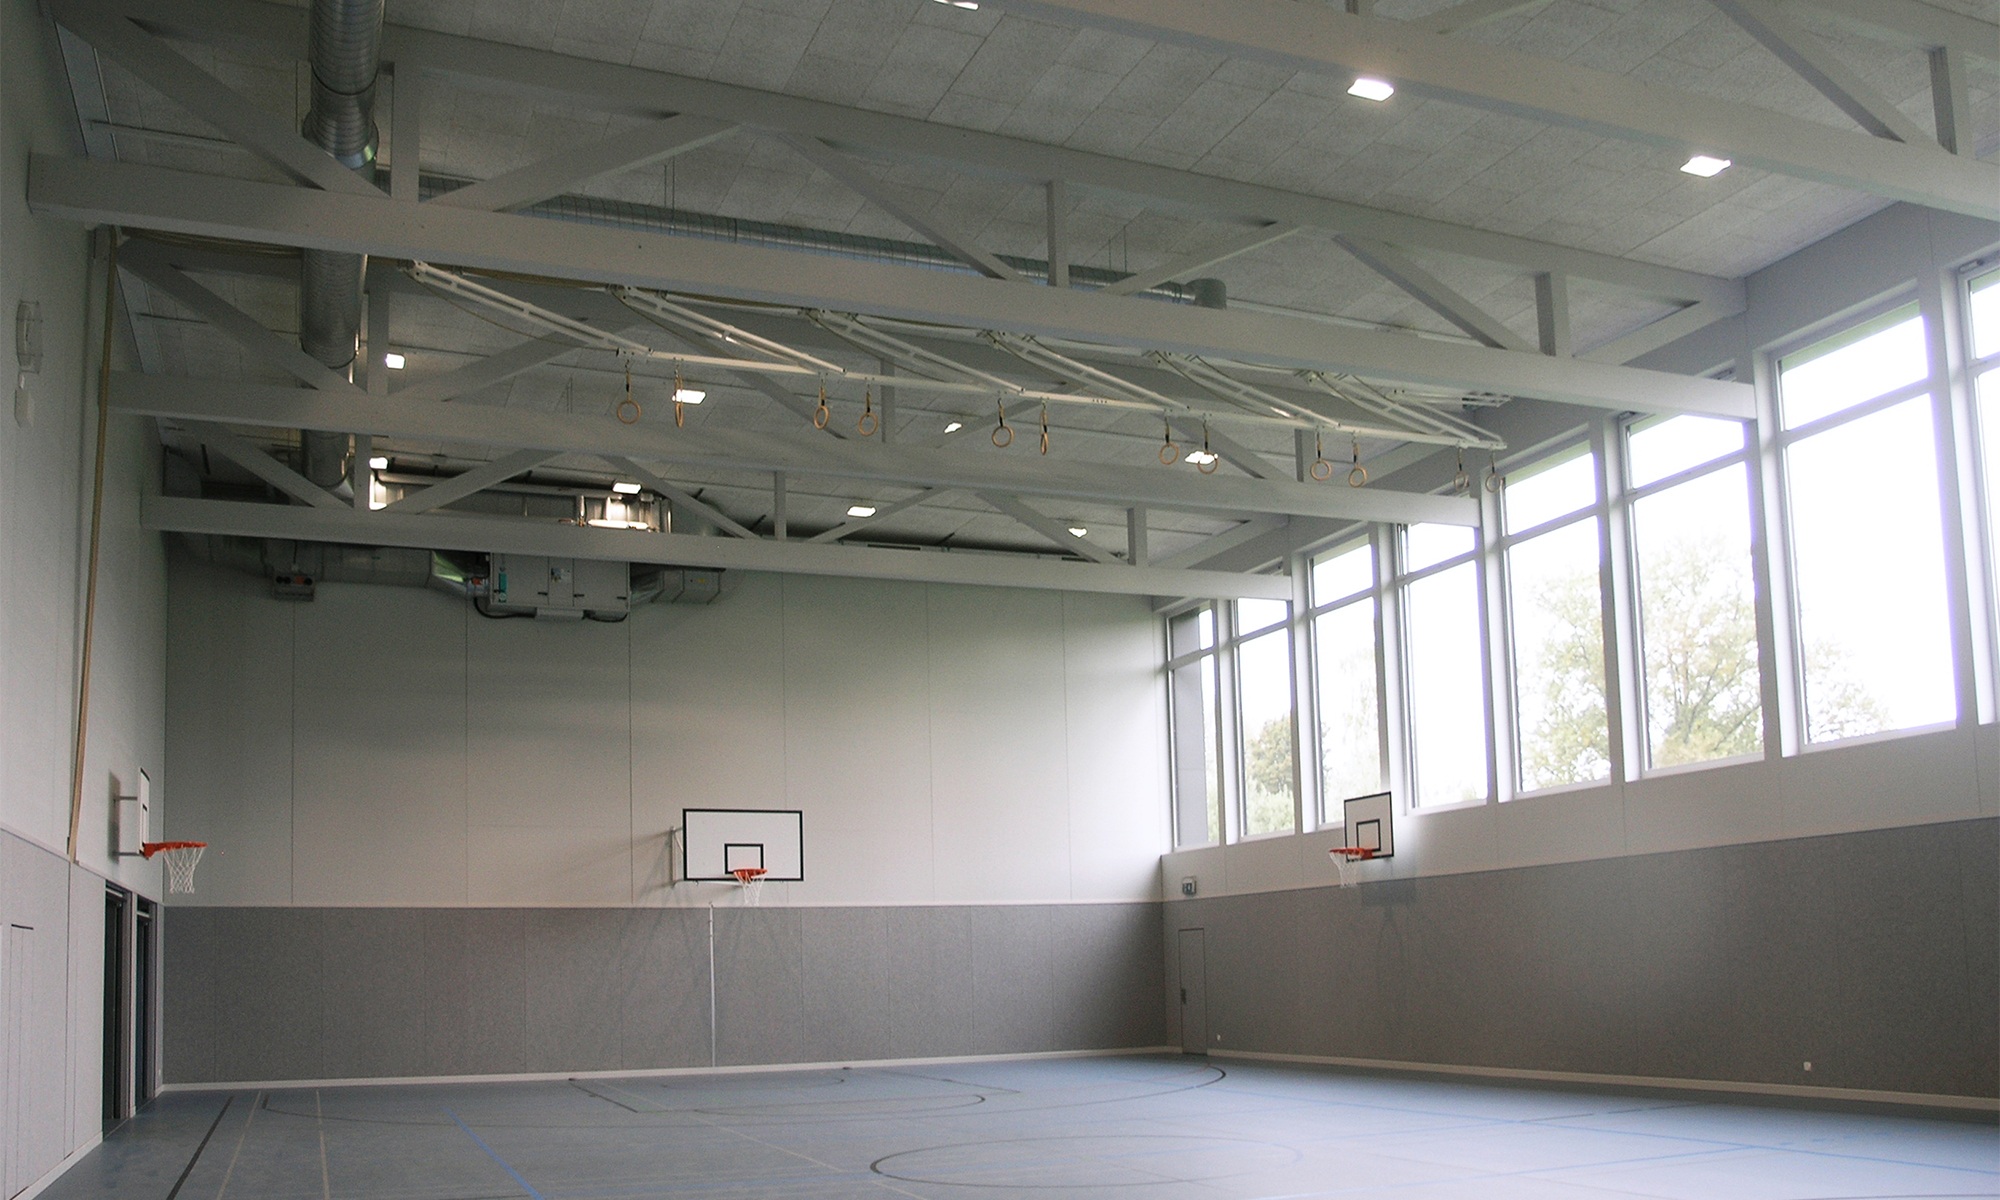 Egal ob Basketball, Fussball oder andere Sportarten, in der Turnhalle können sich die Schüler austoben.